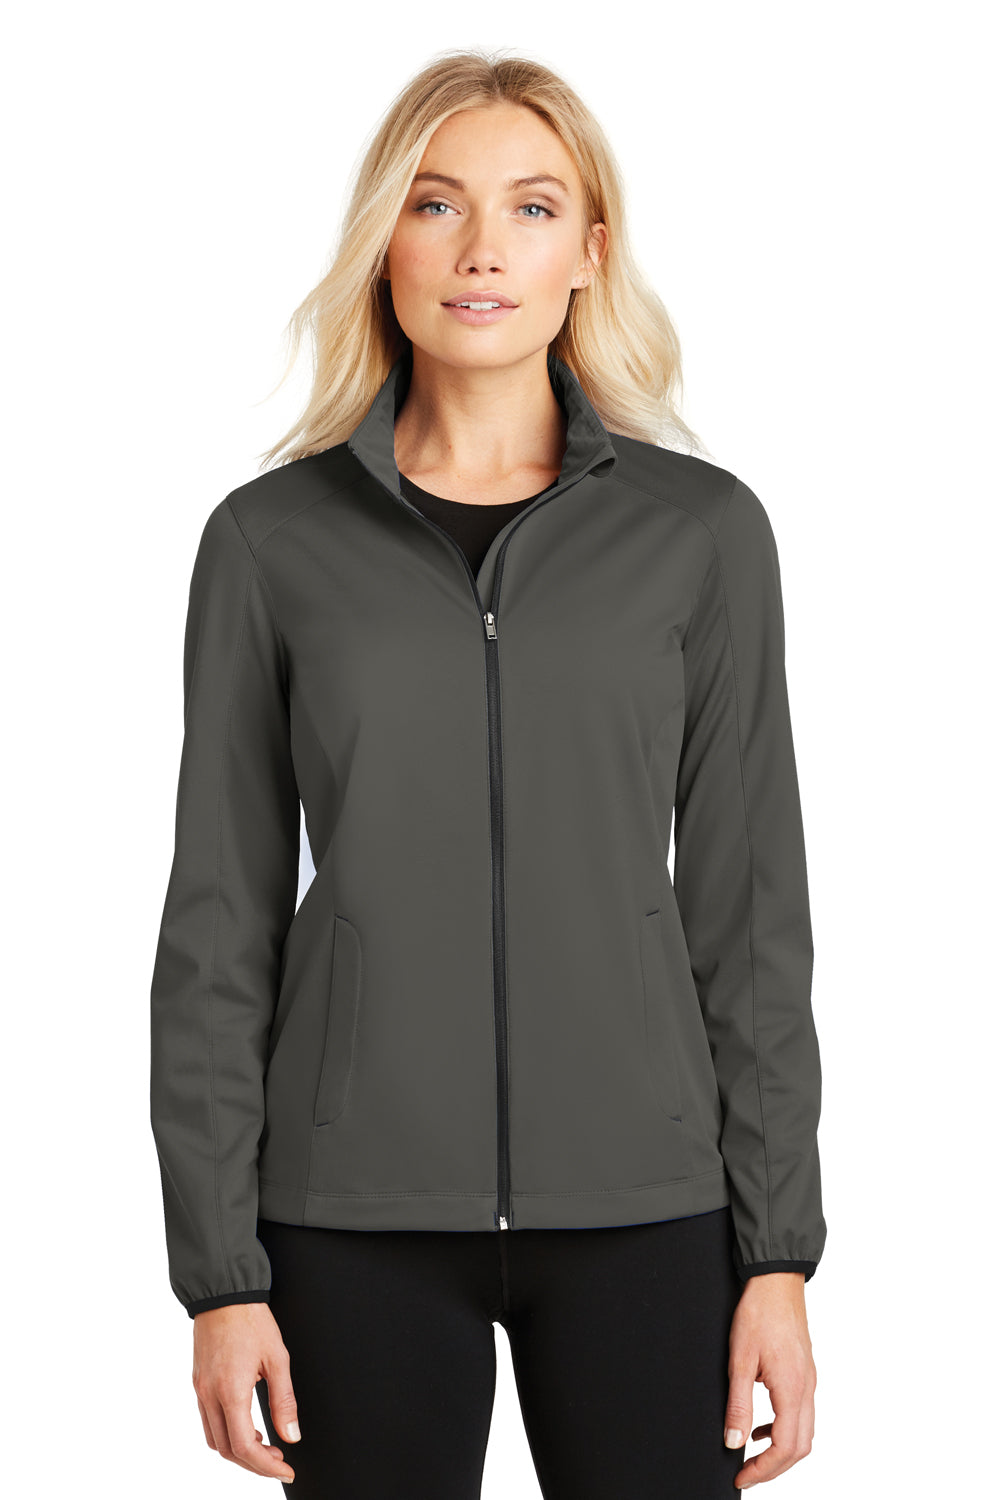 Port Authority L717 Womens Active Wind & Water Resistant Full Zip Jacket Grey Steel Front